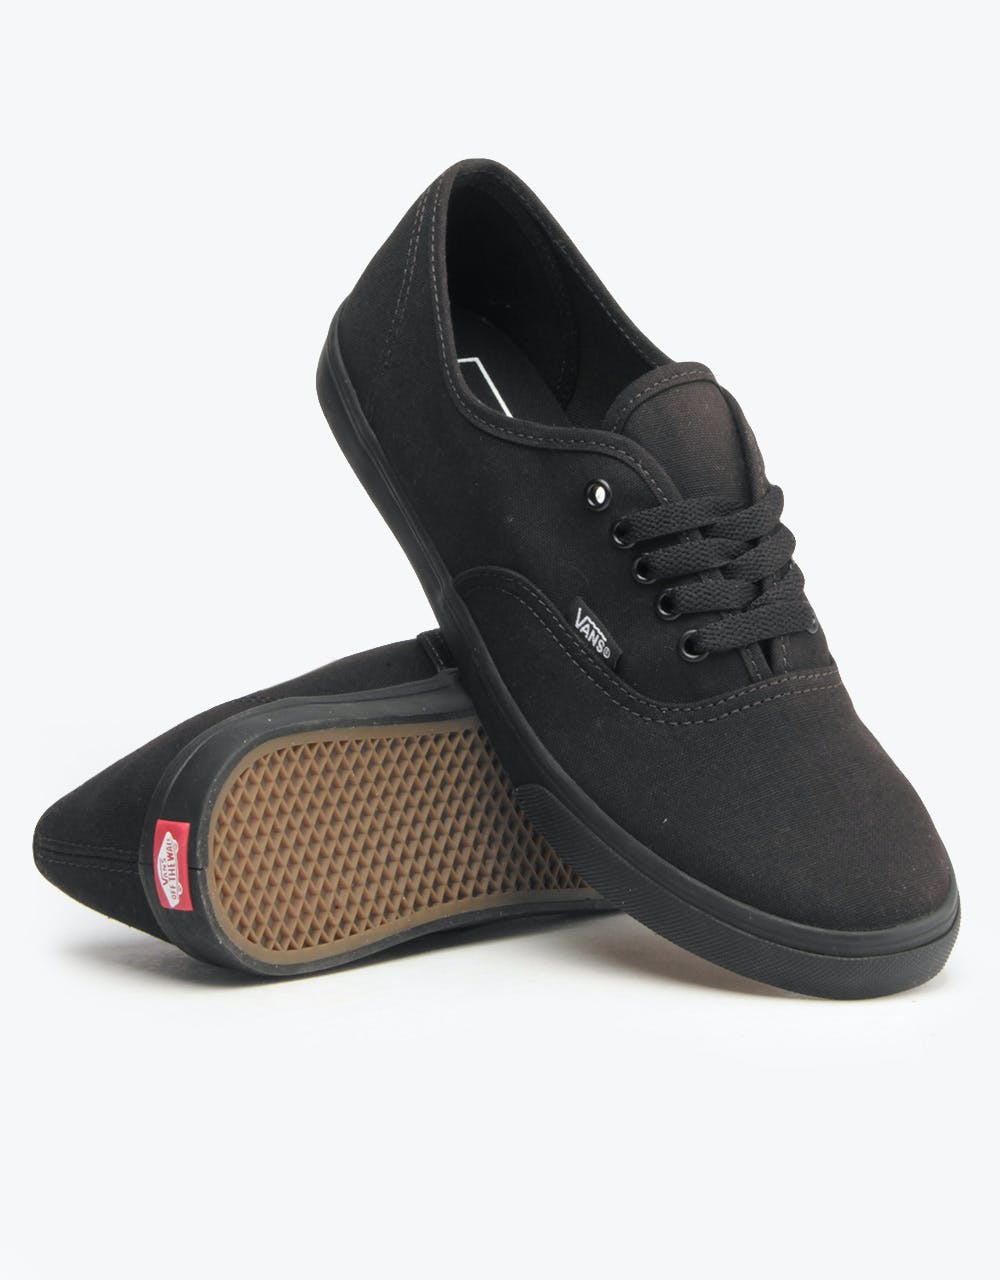 Vans Authentic Lo Pro Shoes - Black/Black